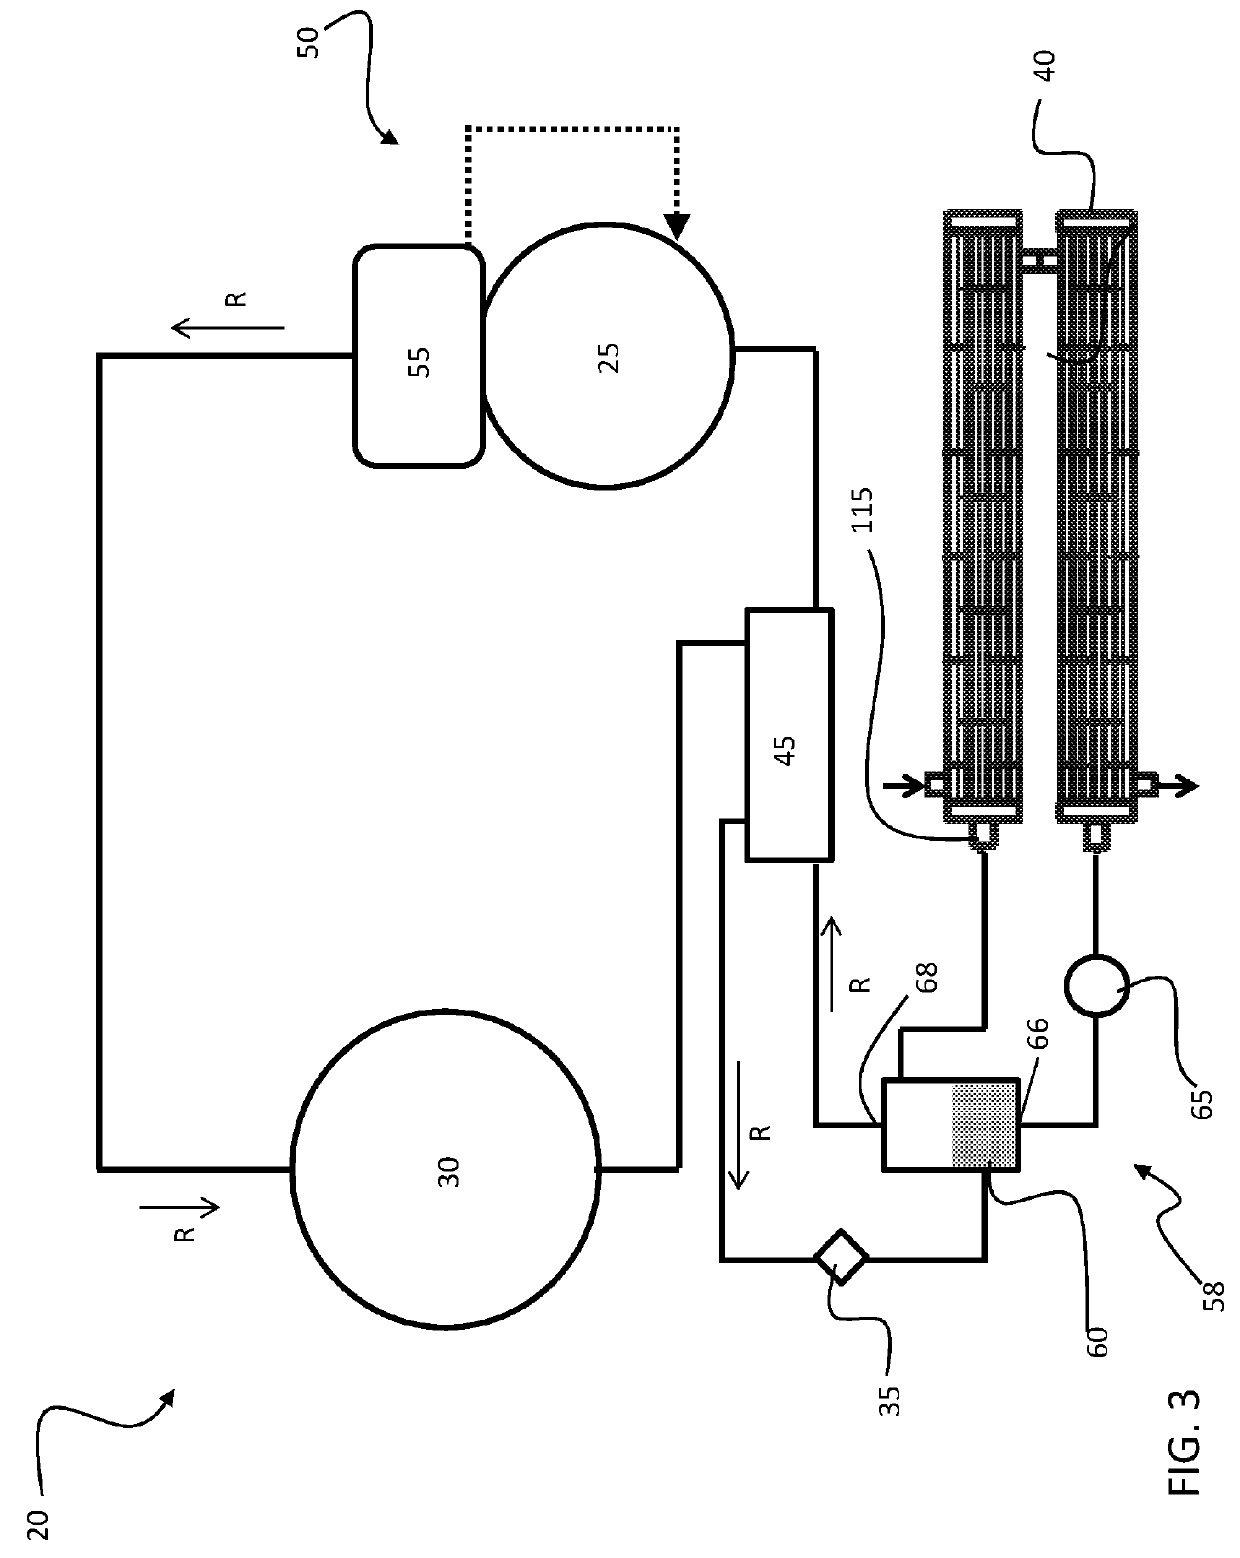 Improved dircet expansion evaporator based chiller system